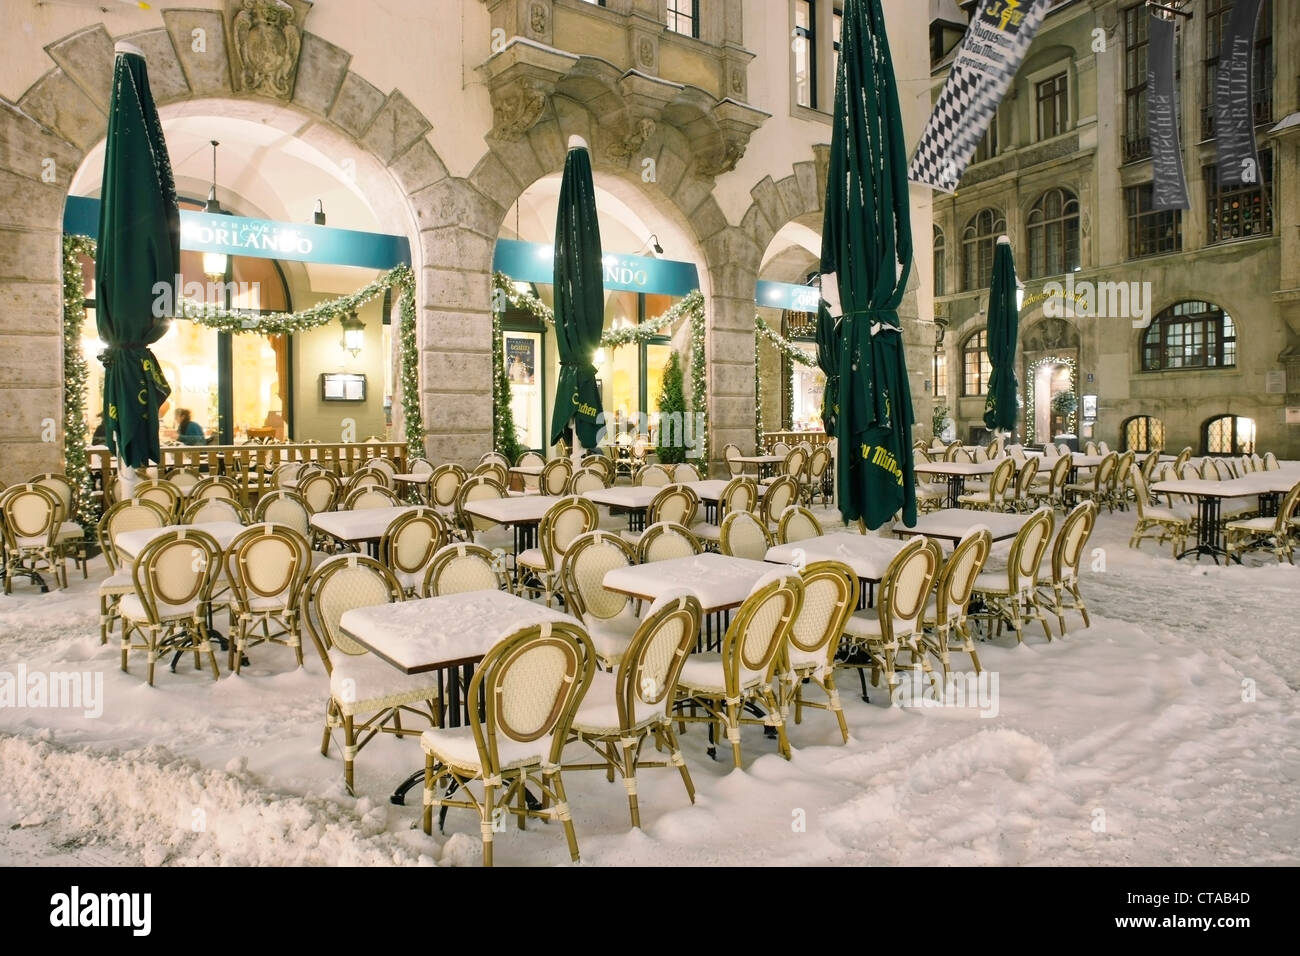 Schnee bedeckt, Stühle und Tische im freien Orlando, Platzl, München, Bayern, Deutschland Stockfoto